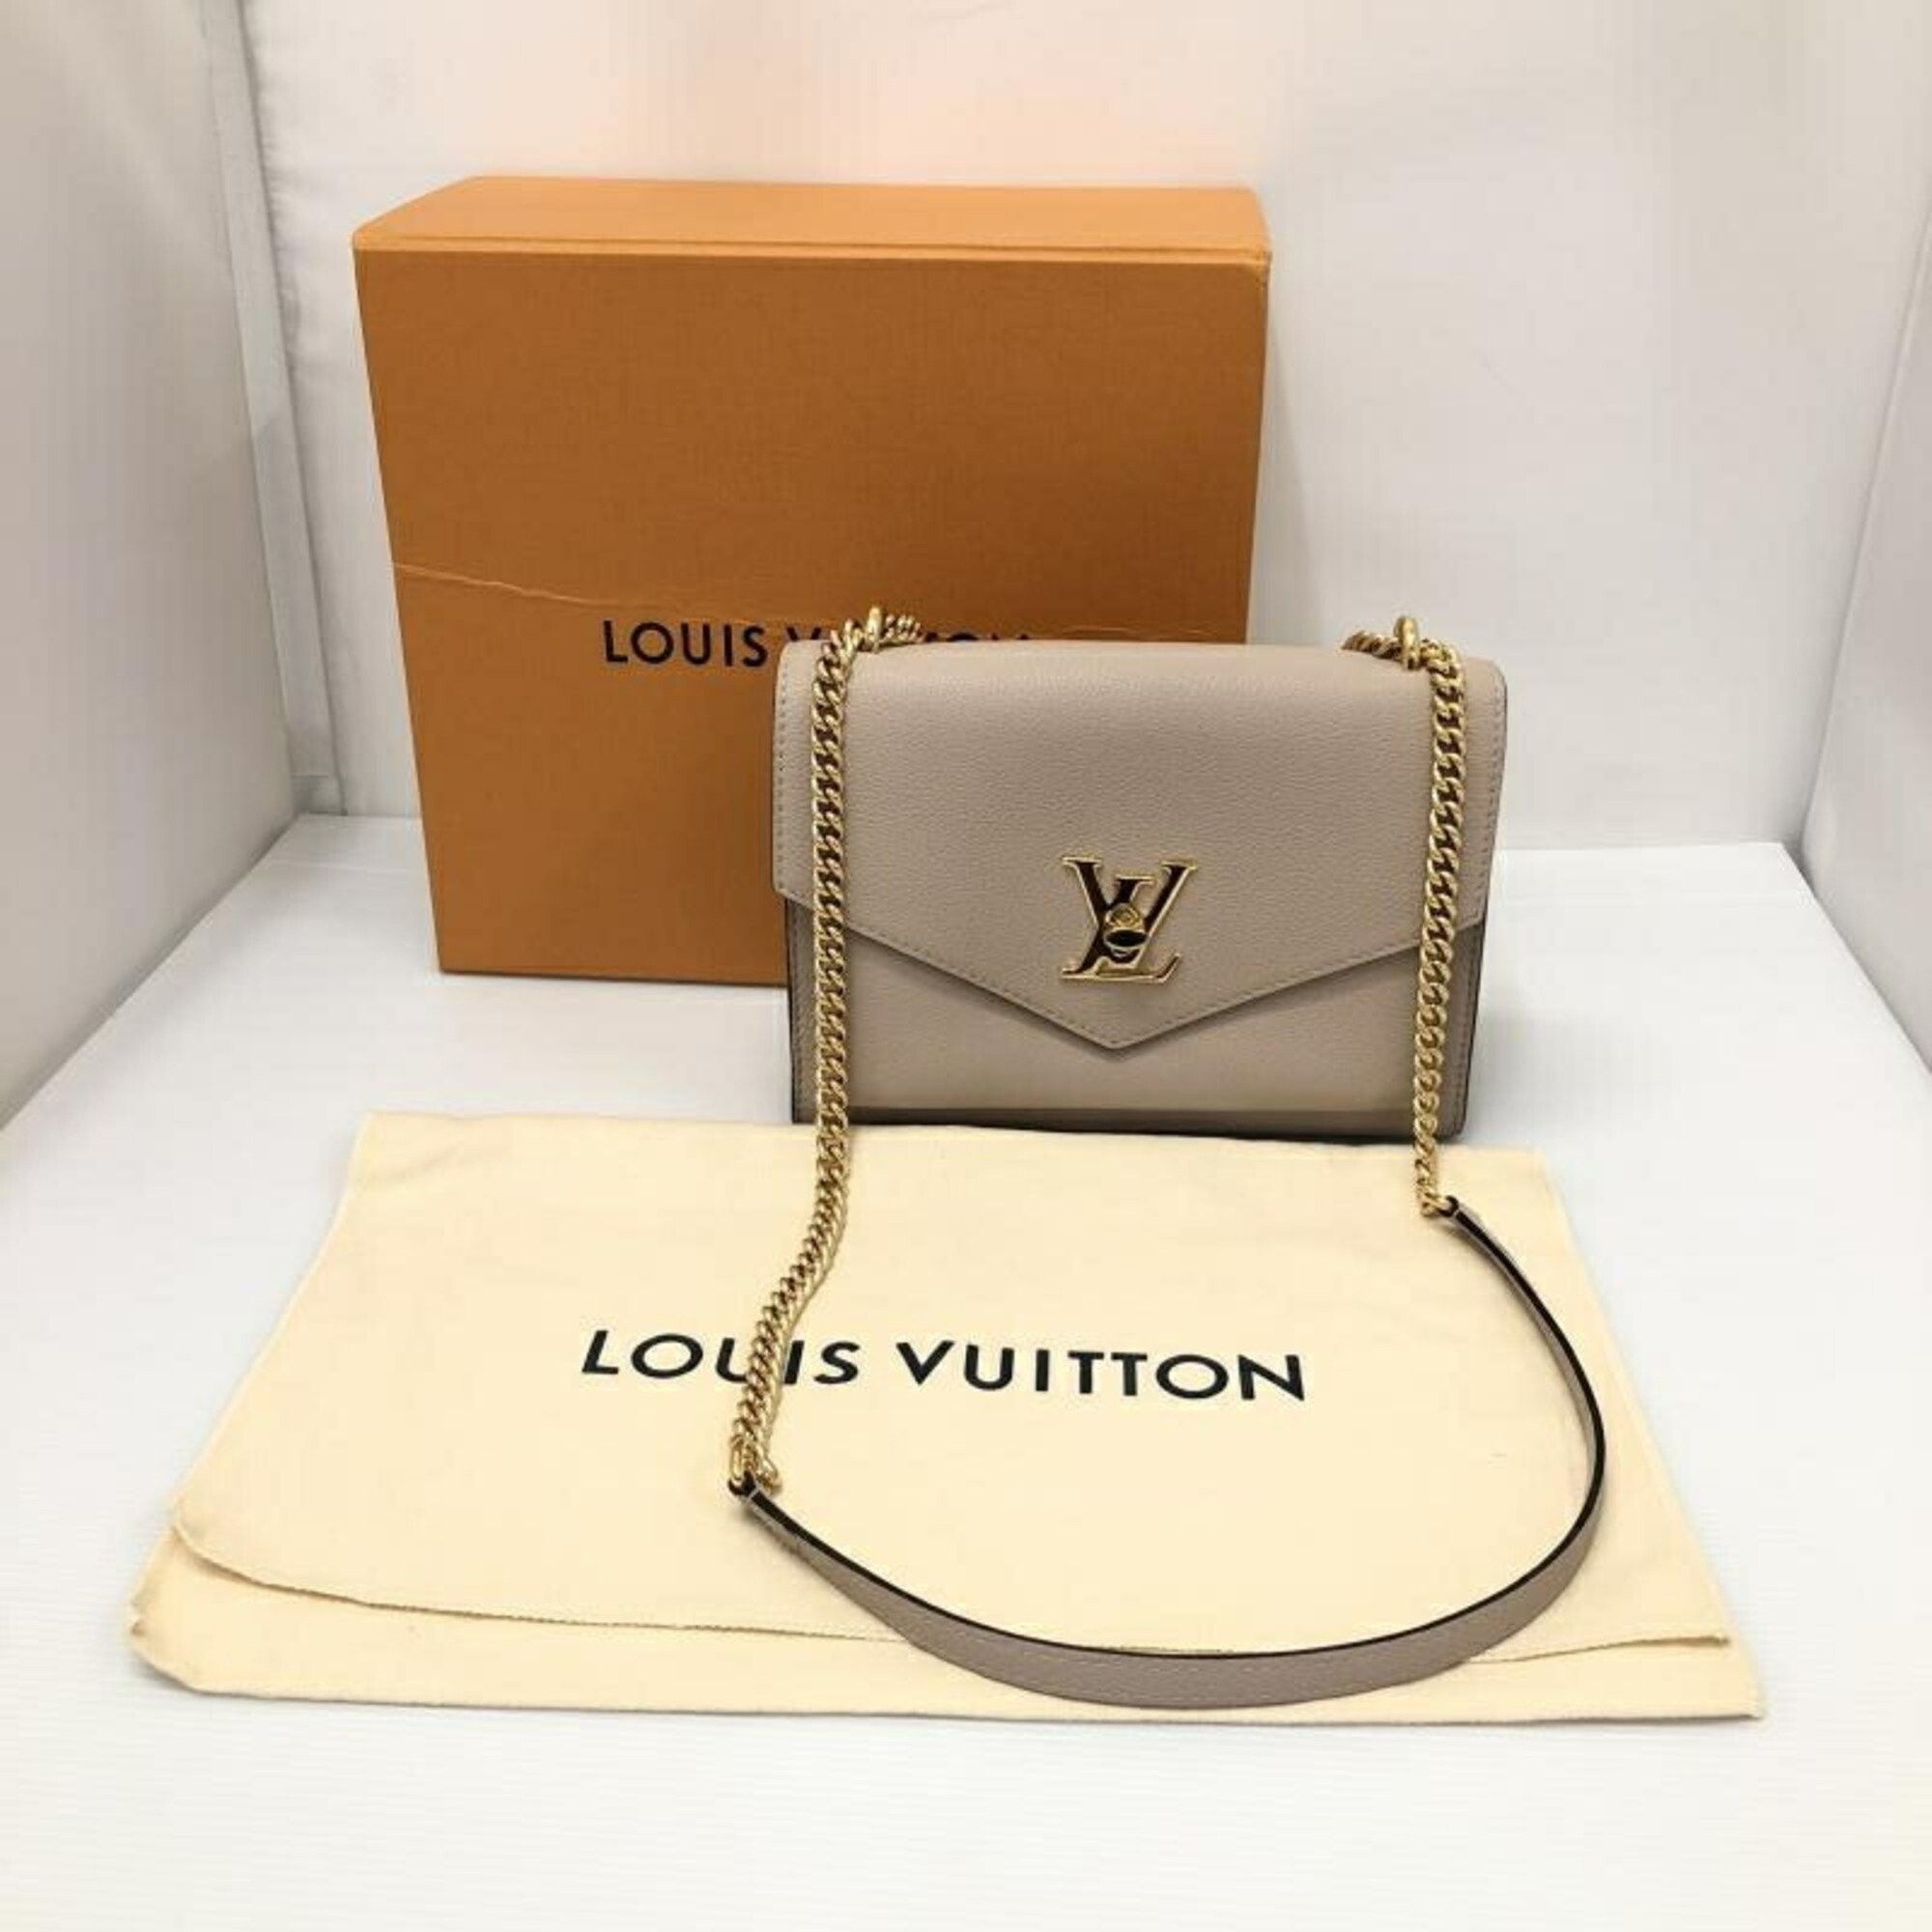 Authentic LOUIS VUITTON Lockme Chain M56137 Shoulder bag #260-004